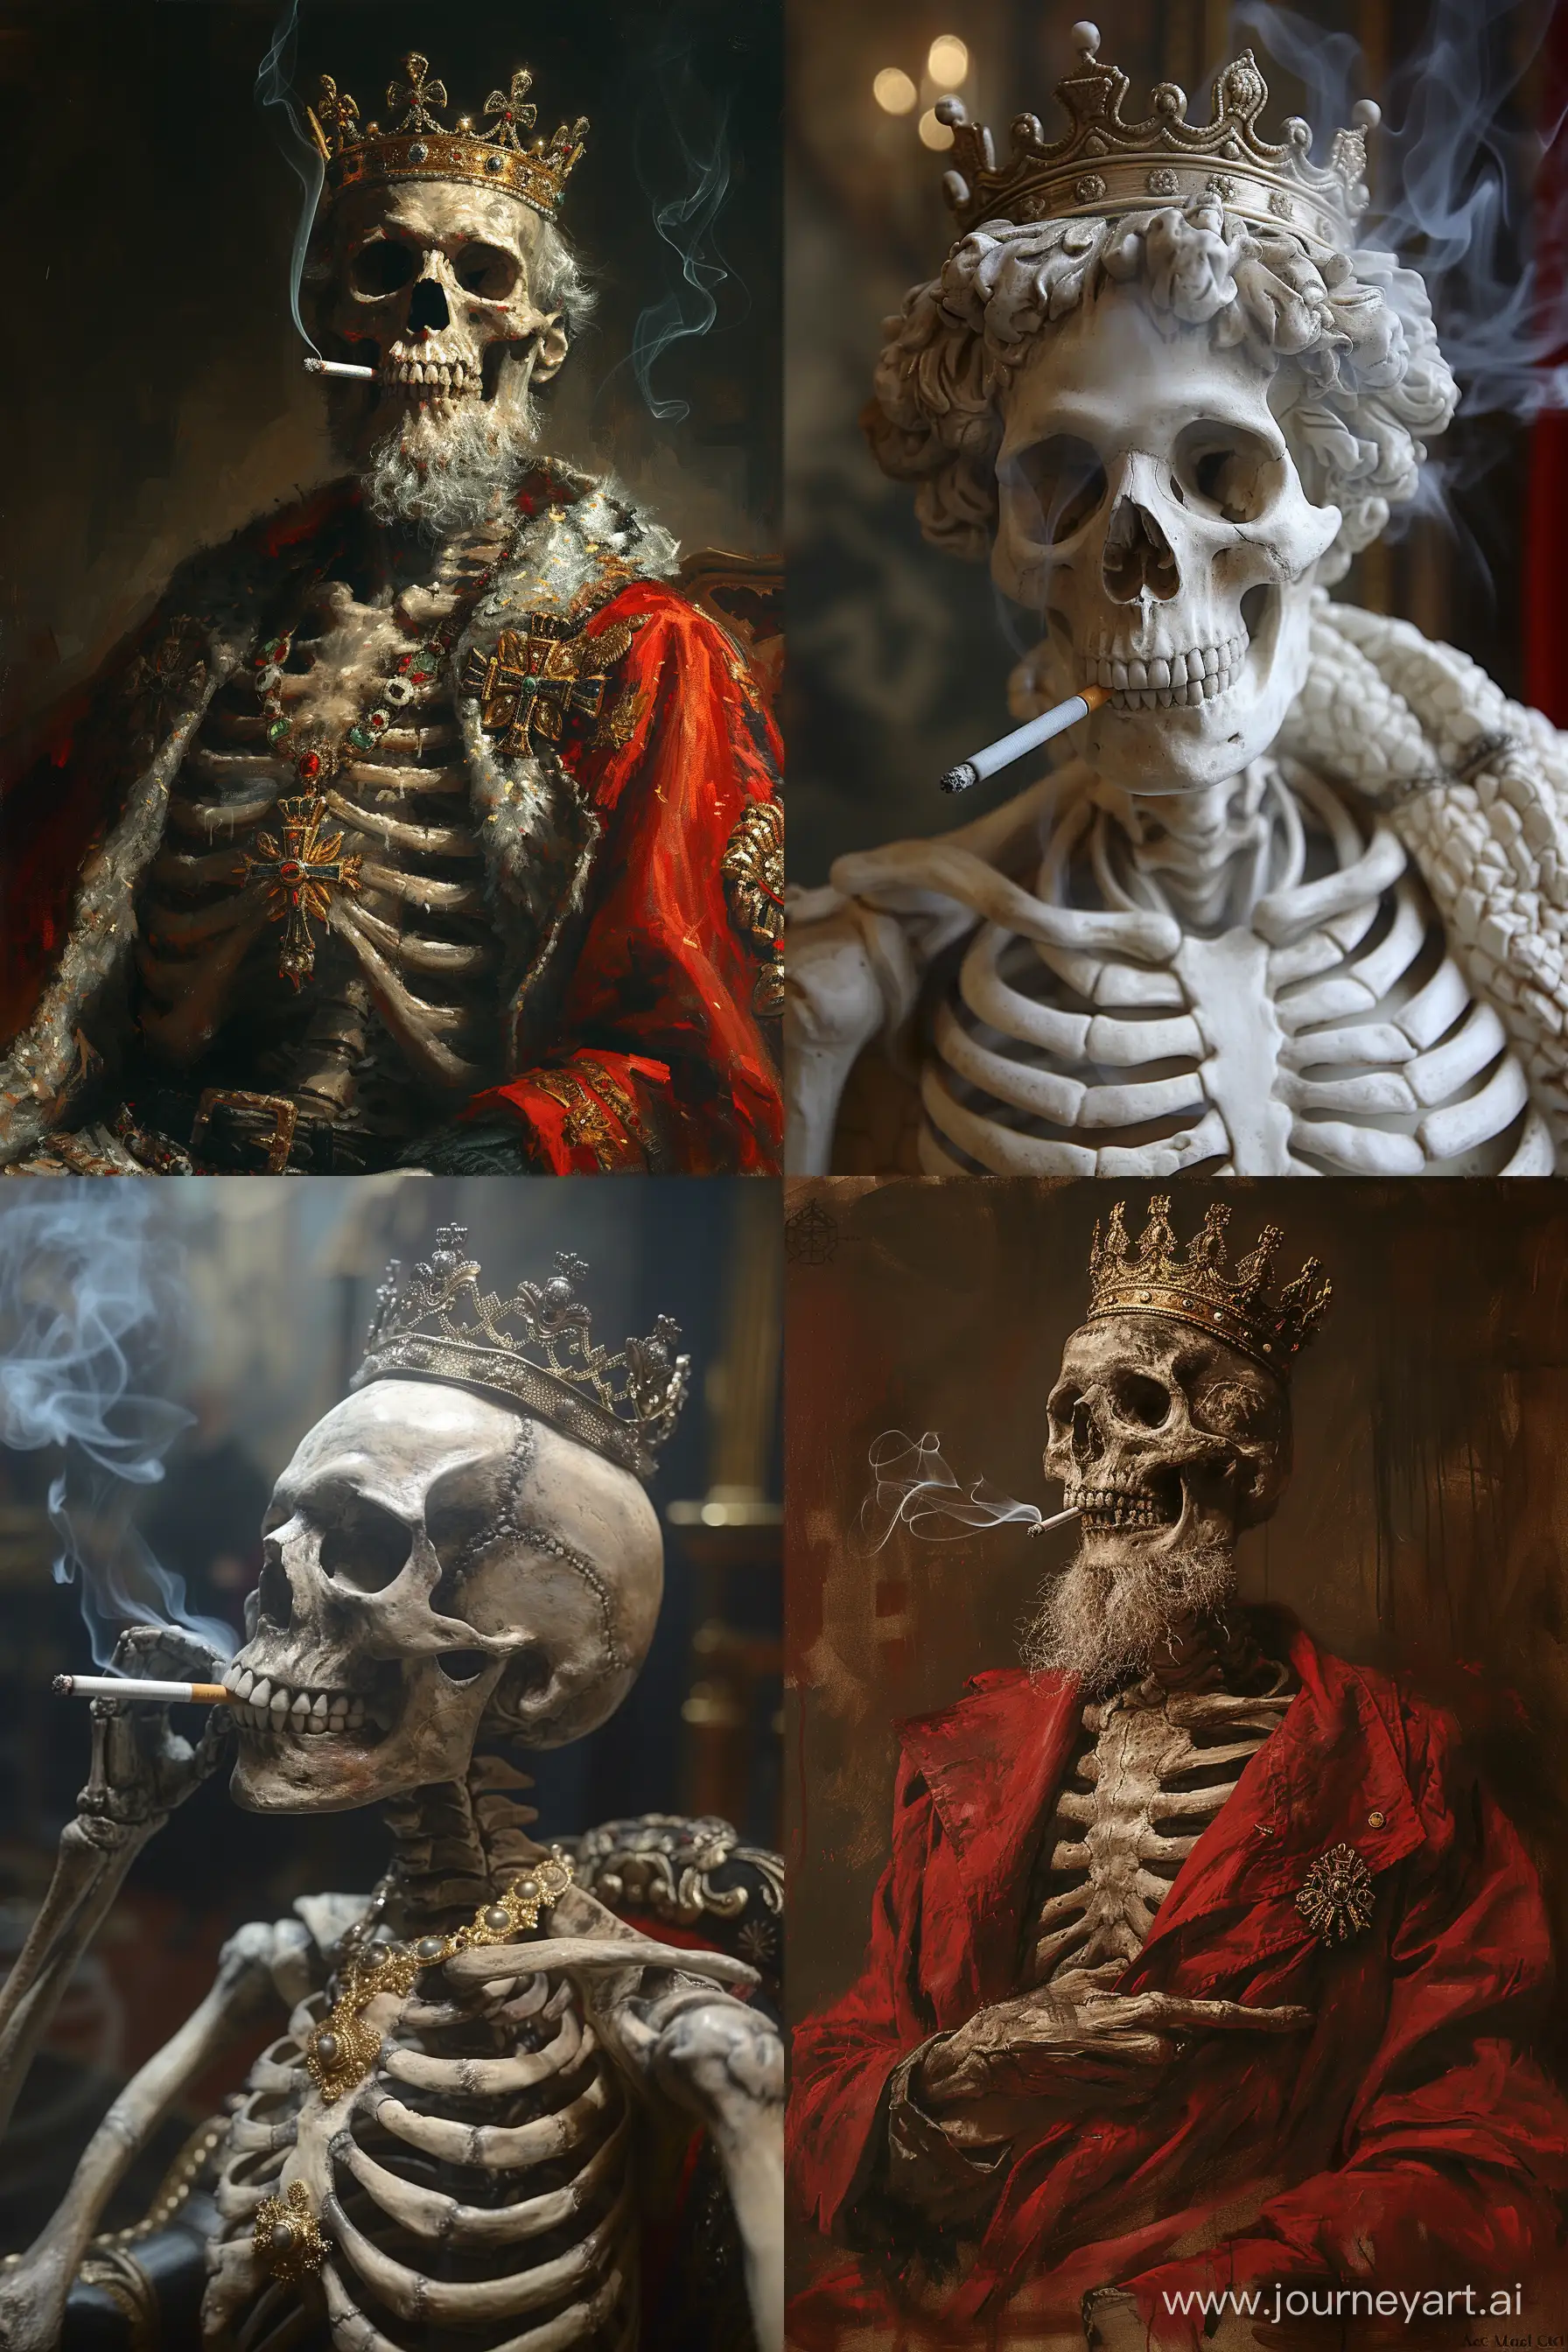 Regal-Skeleton-King-Smoking-Crowned-Cigarette-Artwork